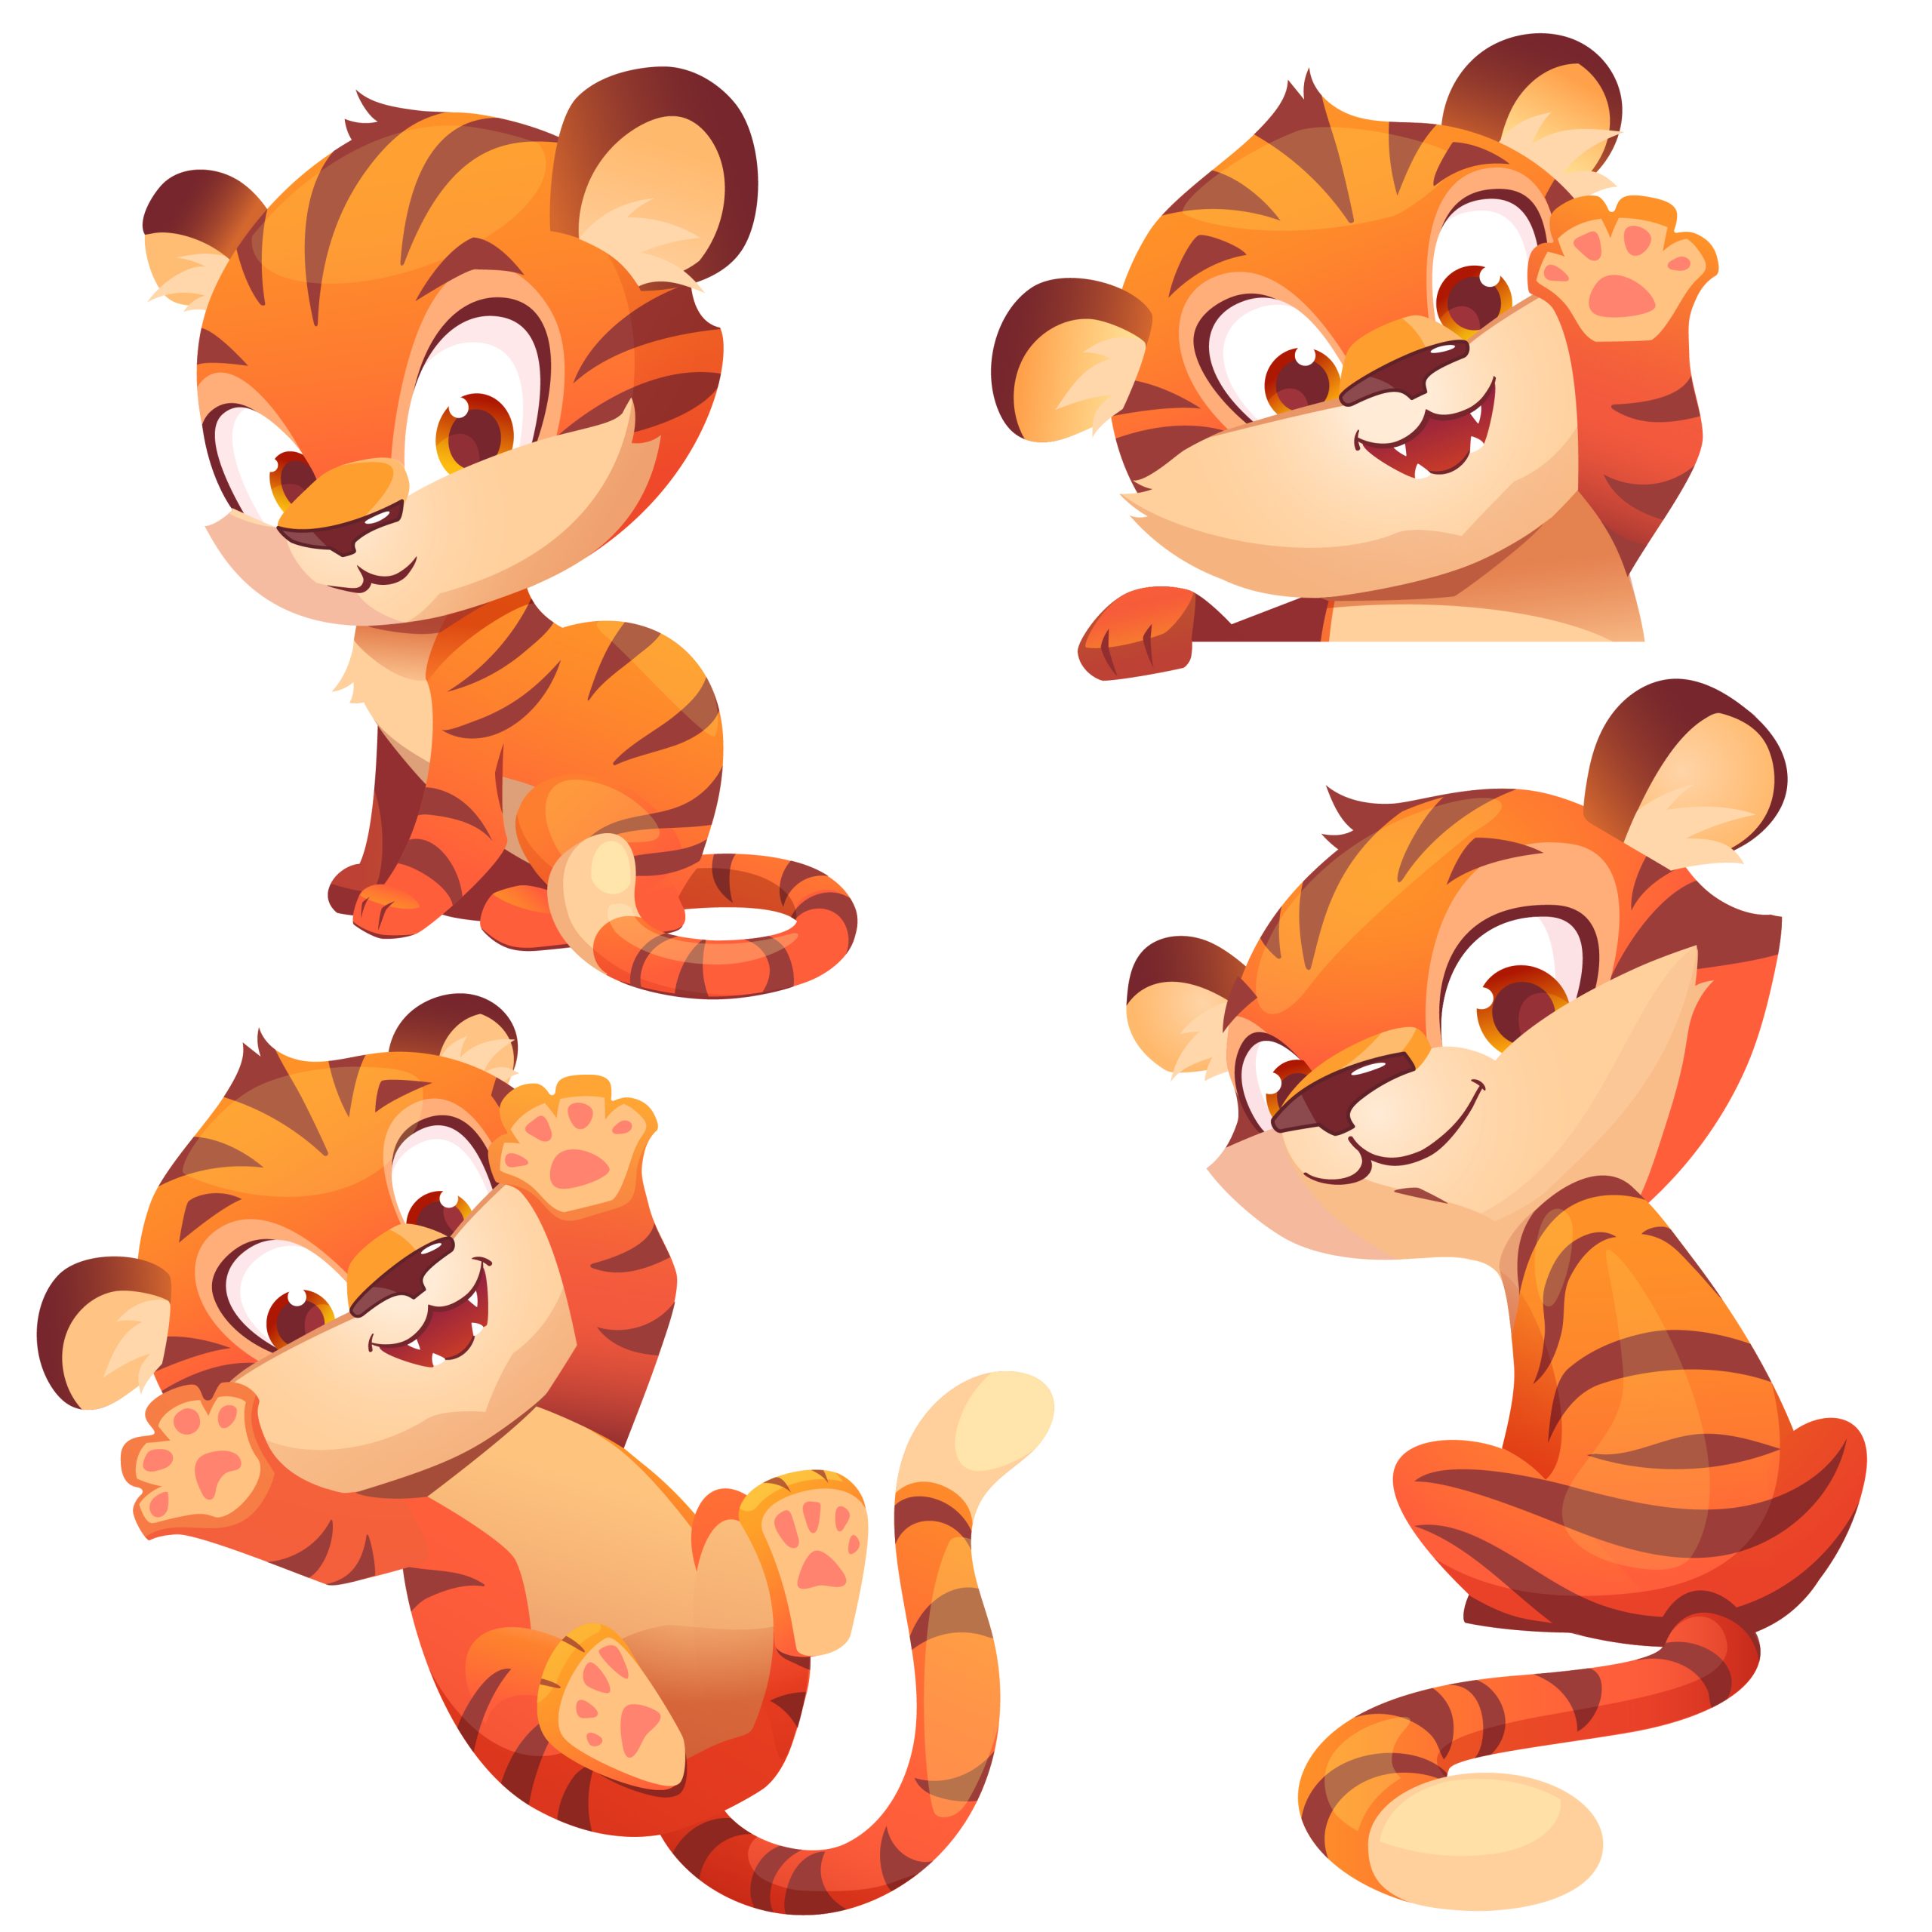 Desenhos de tigre para colorir